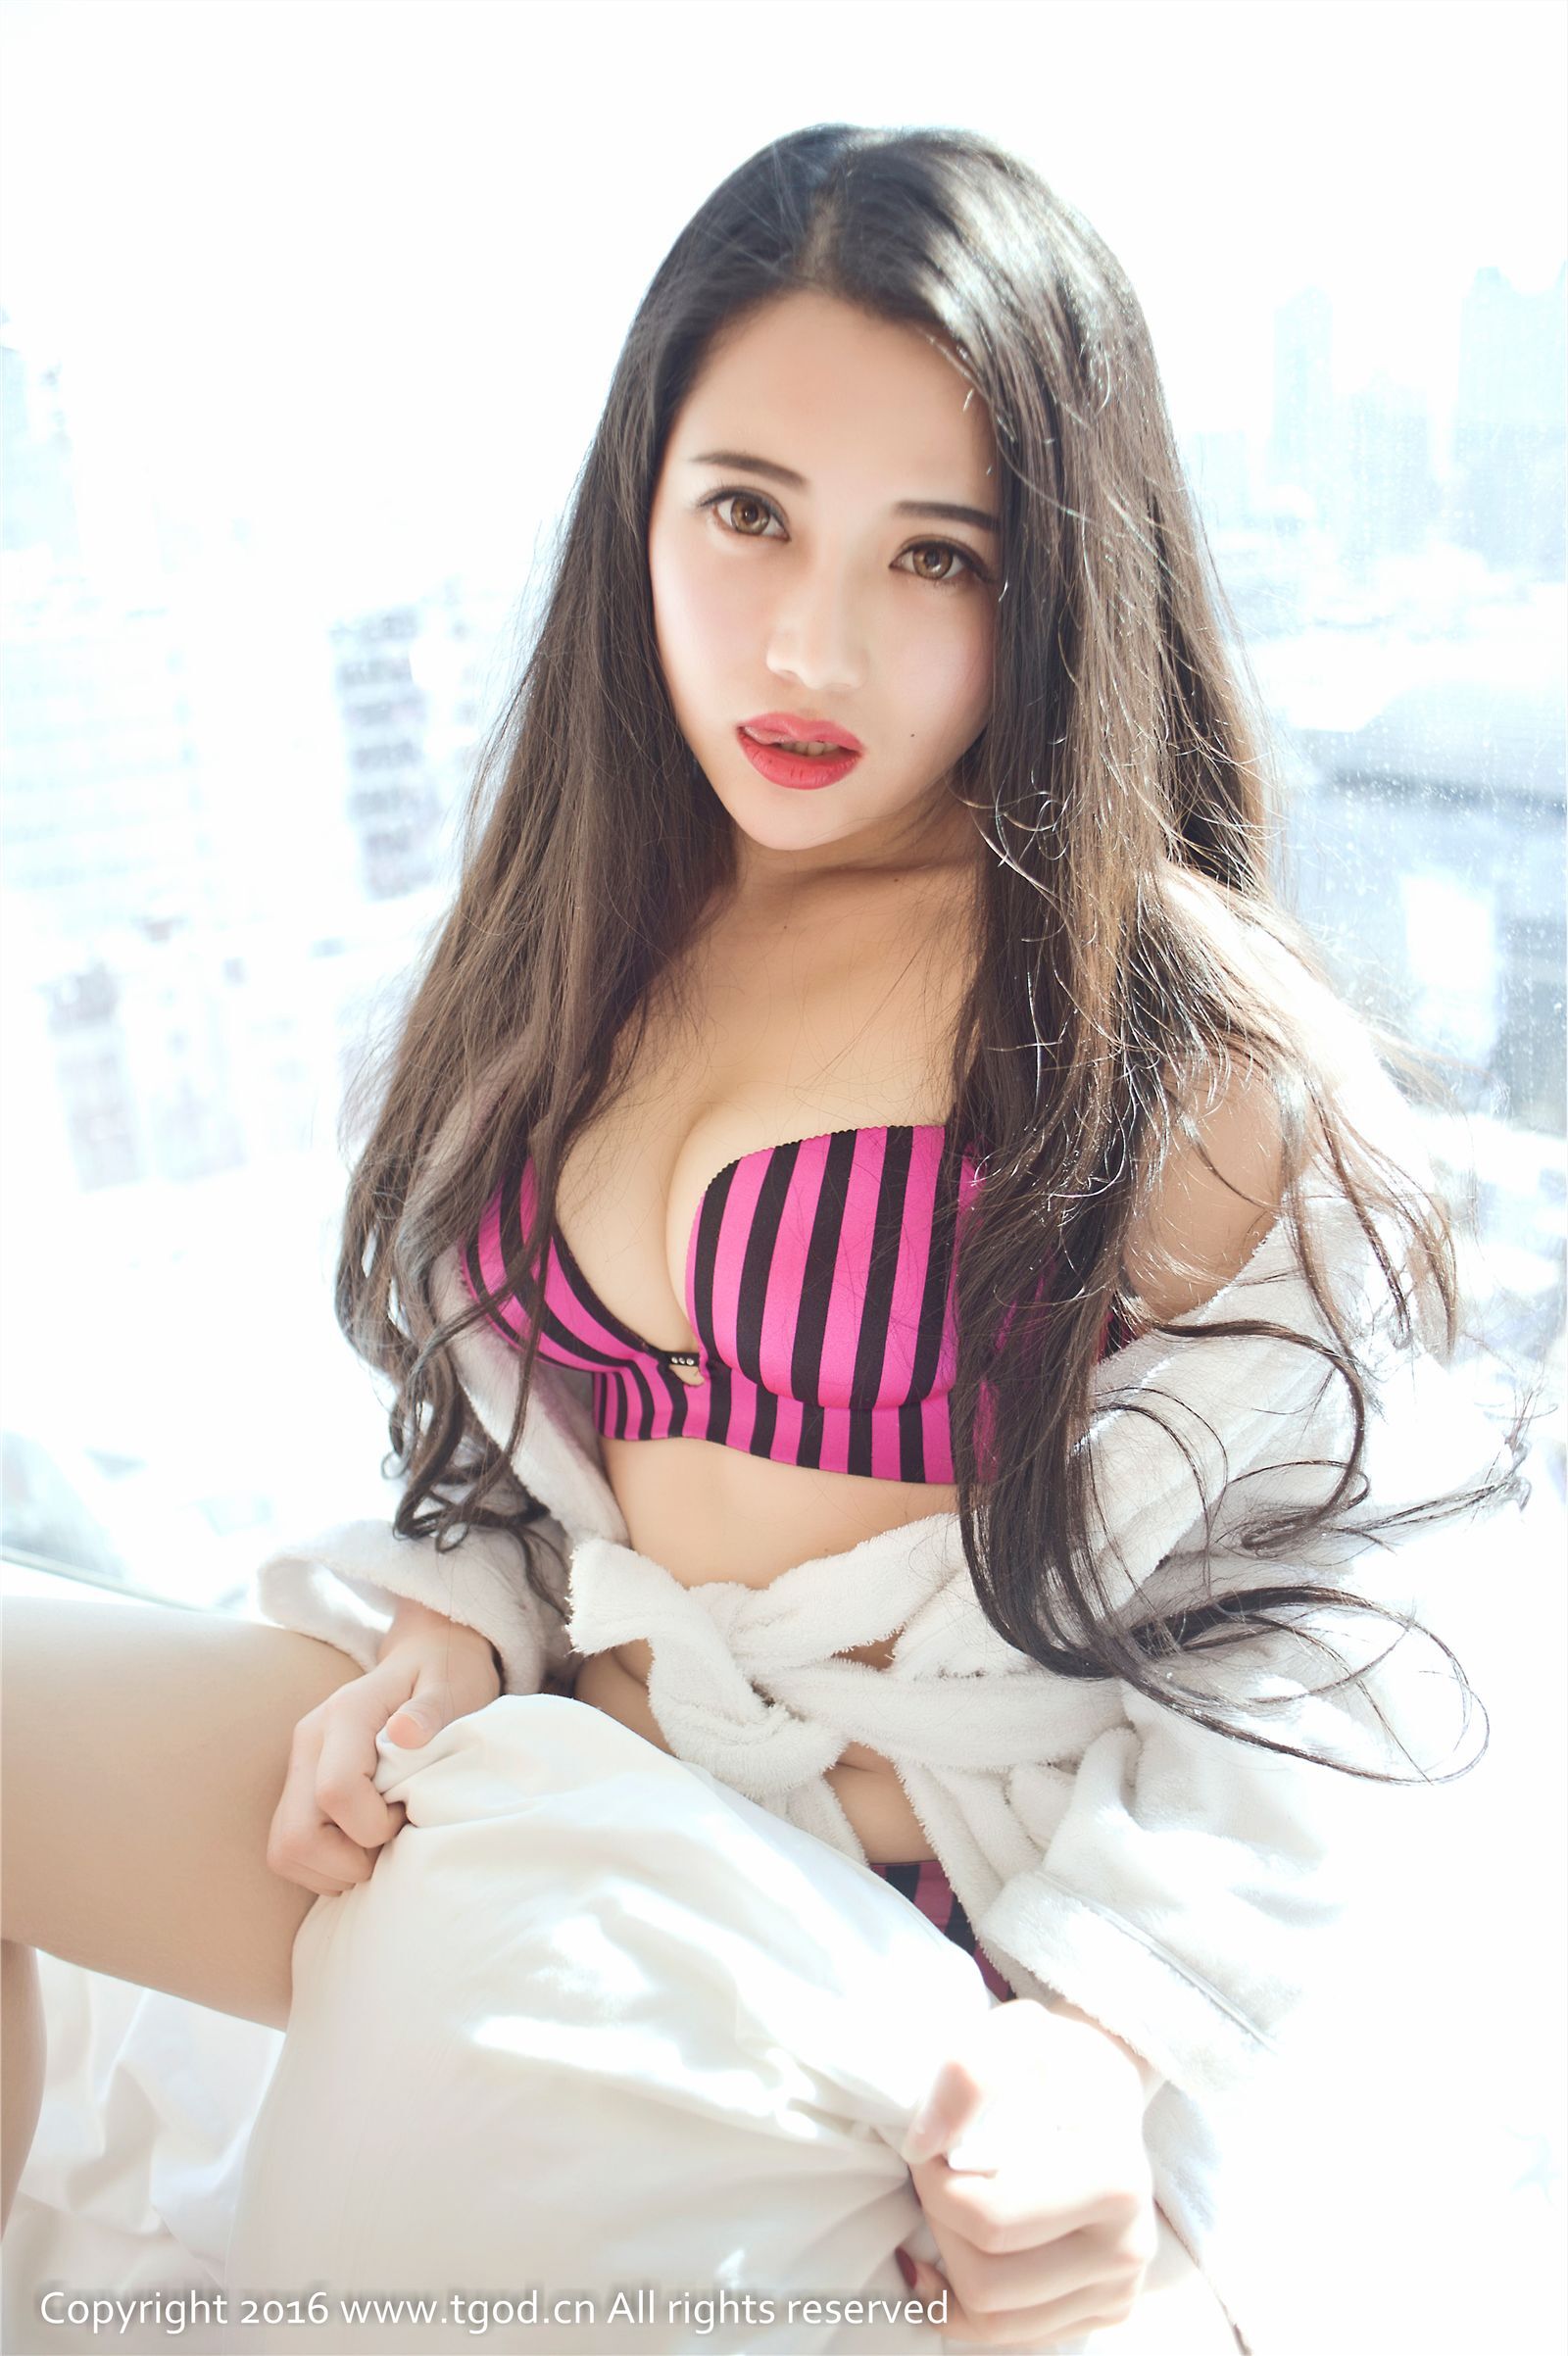 [tgod push goddess] April 4, 2016 Zhu Xiaoxu's next door girl's temptation vacuum dress